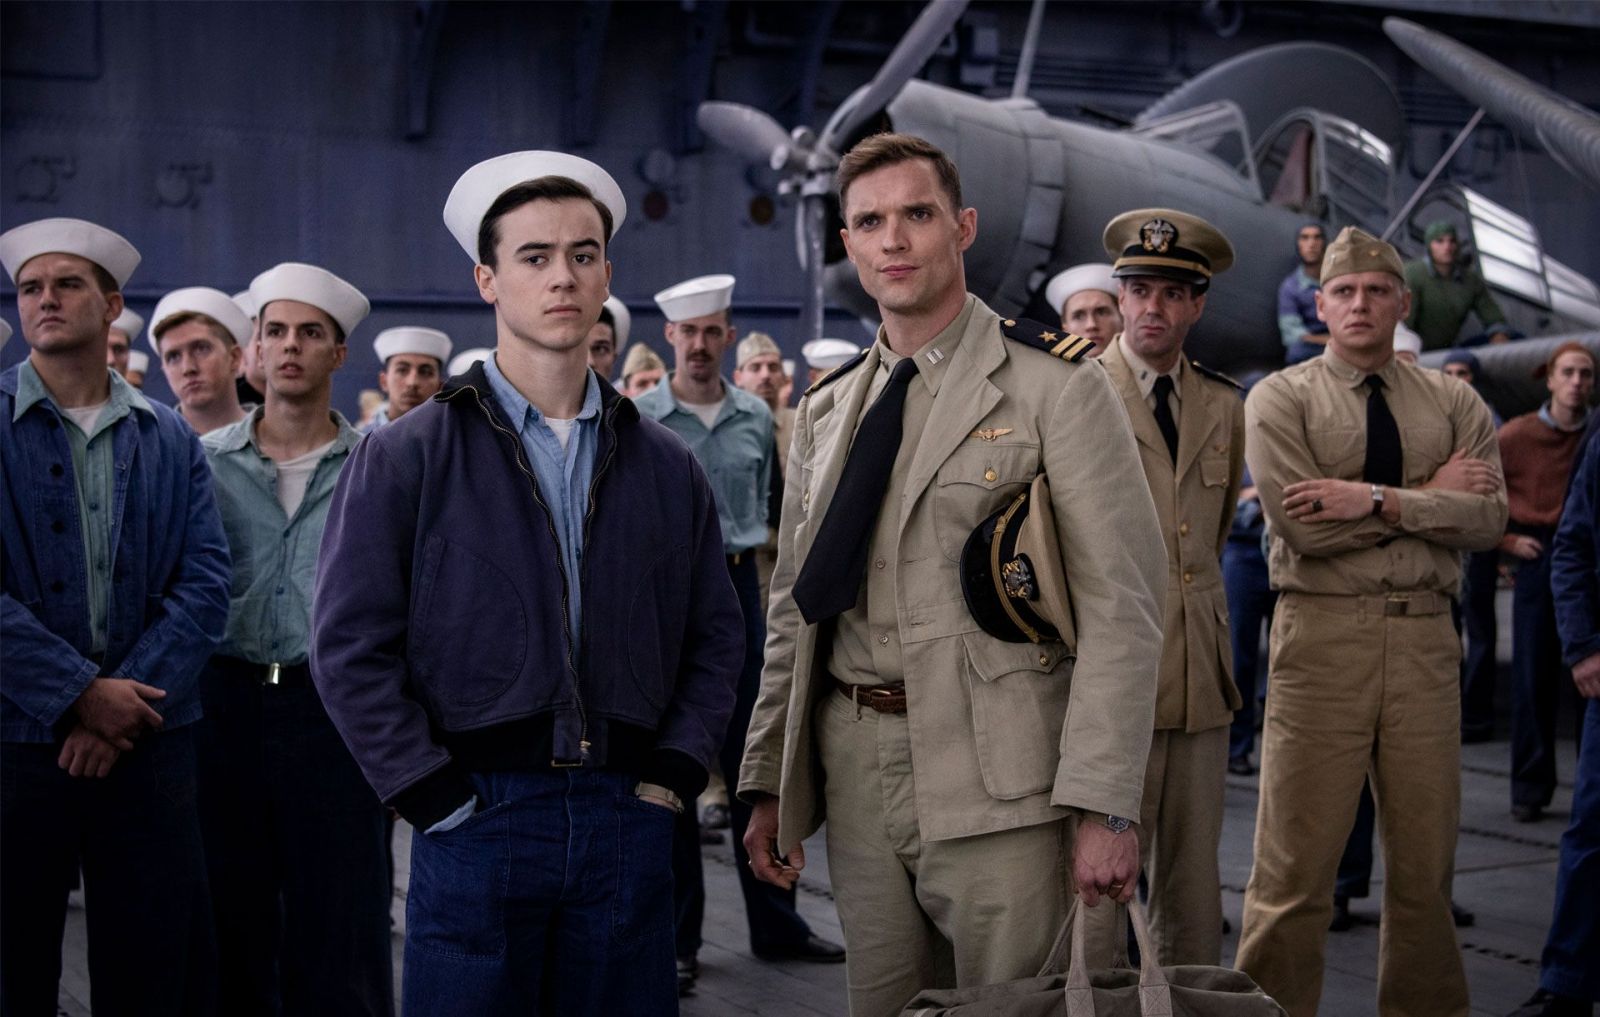 Bitka o Midway je vojnovým filmom s bravúrnymi bitkami odvážnych letcov Japonska a USA, na Pearl Harbor sa ale nechytá (Recenzia)